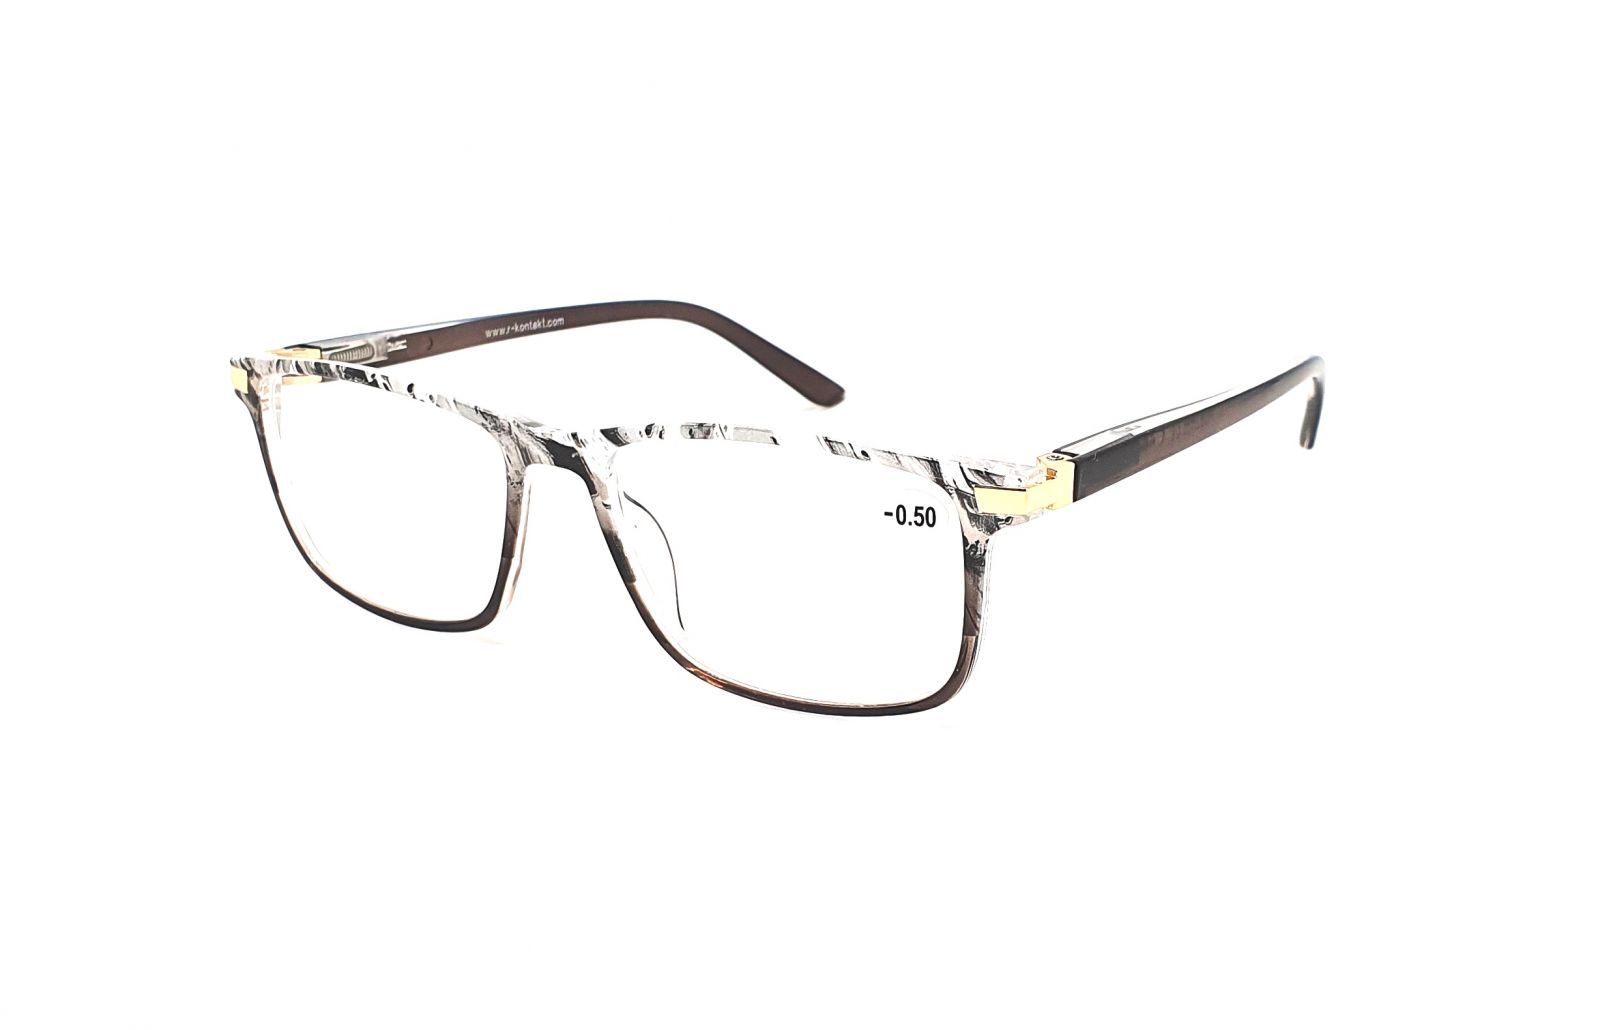 Dioptrické brýle V3075 / -2,50 grey flex